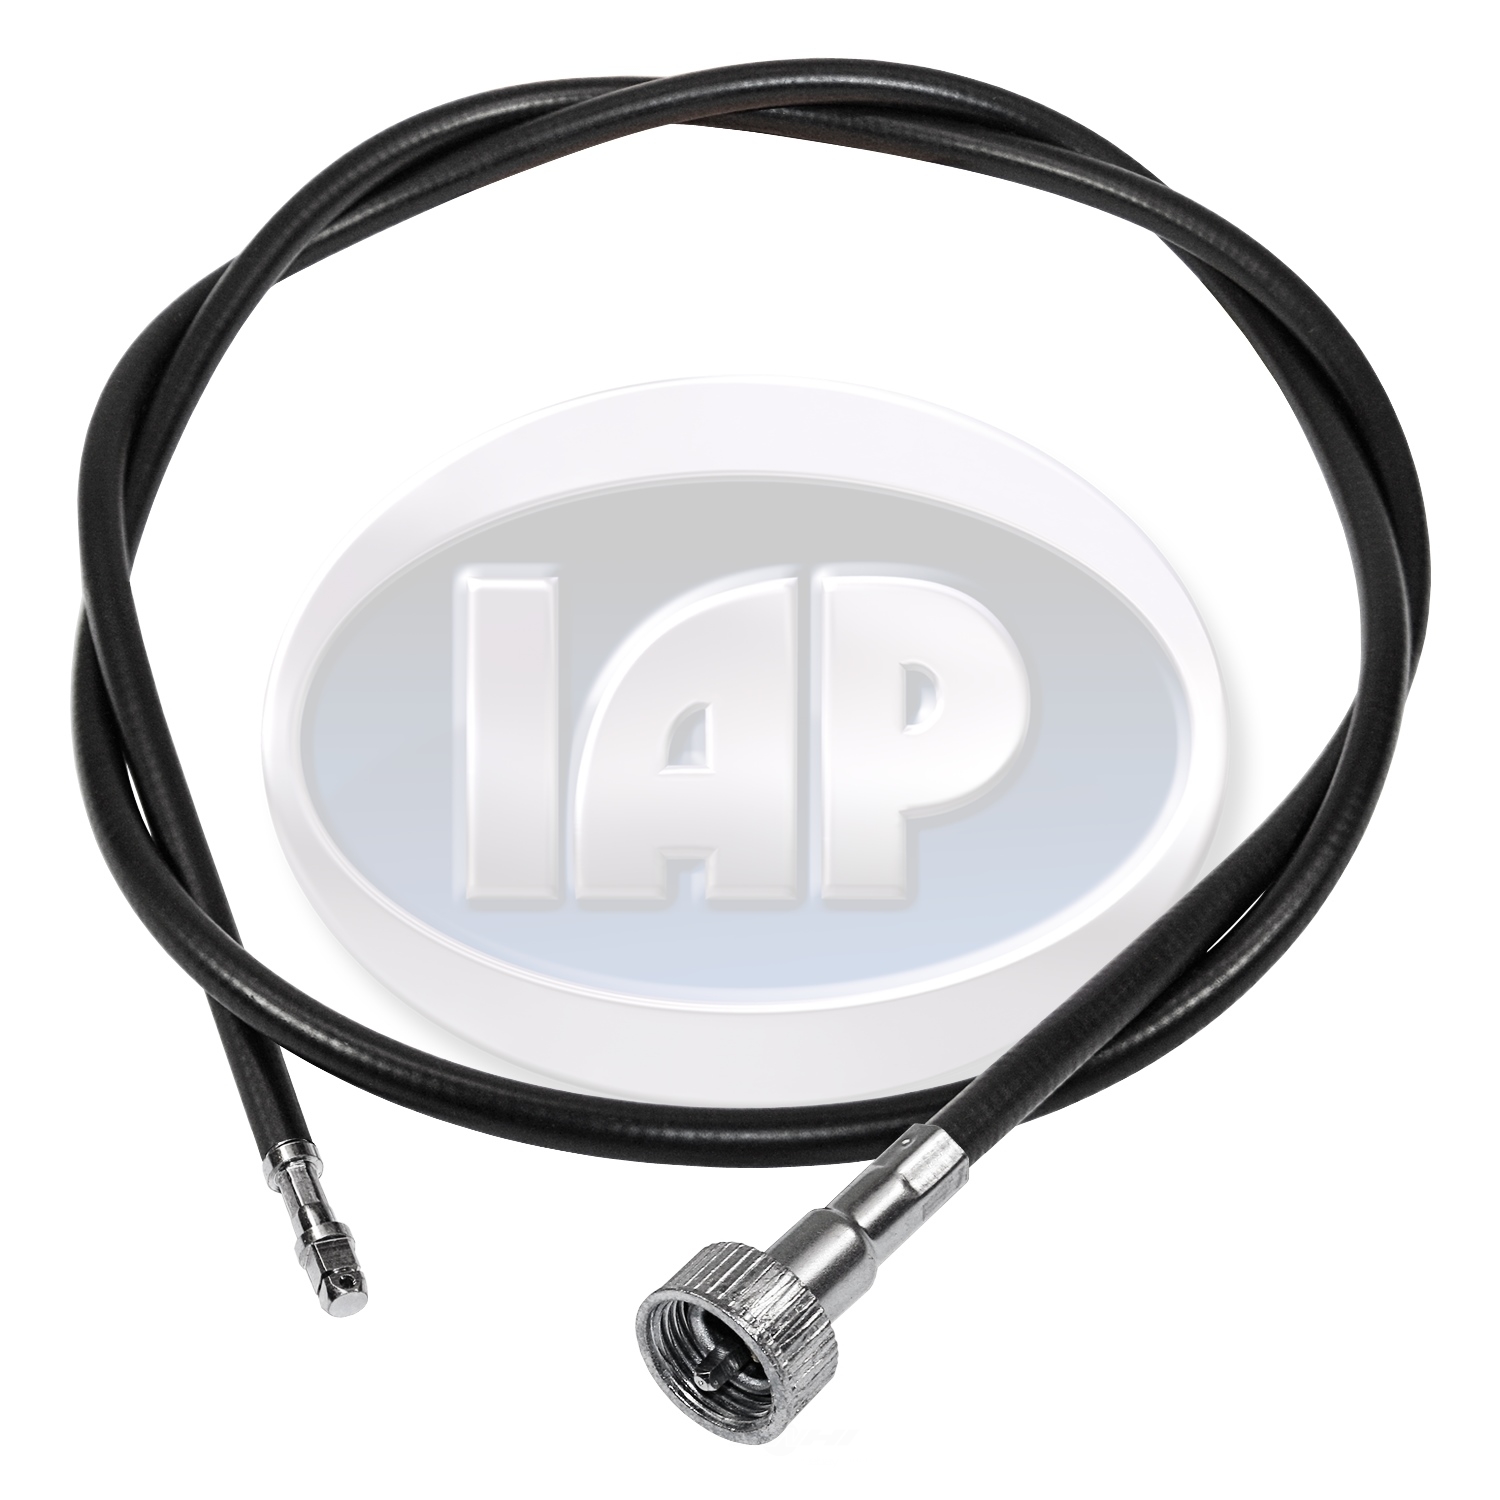 IAP/KUHLTEK MOTORWERKS - Speedometer Cable - KMS 113957801A